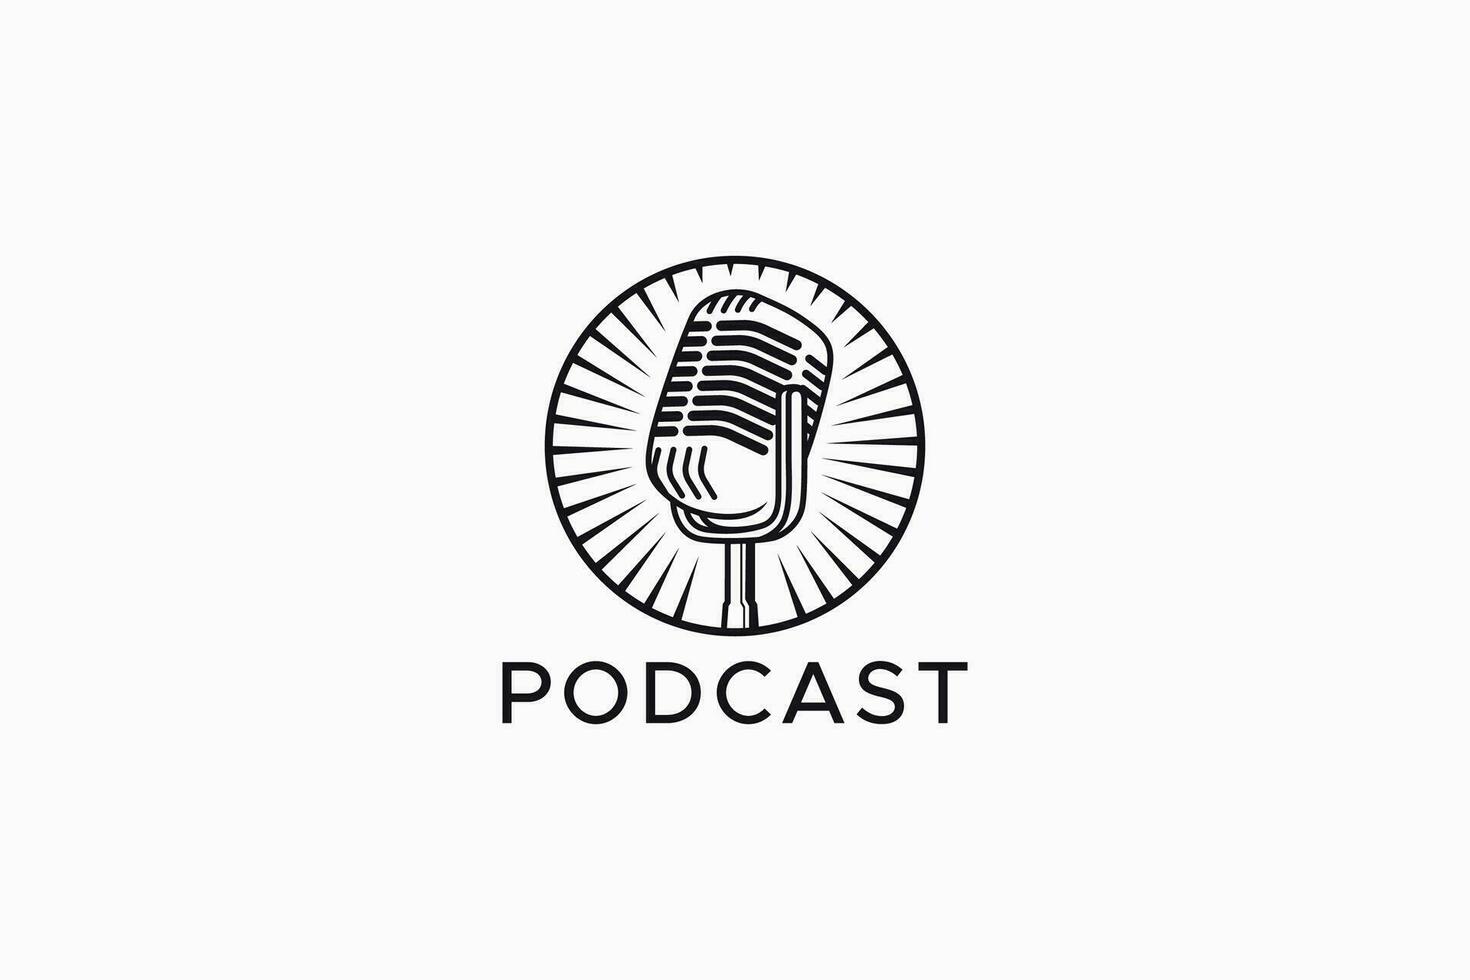 Podcast divertimento Audio e suono microfono Radio retrò logo vettore